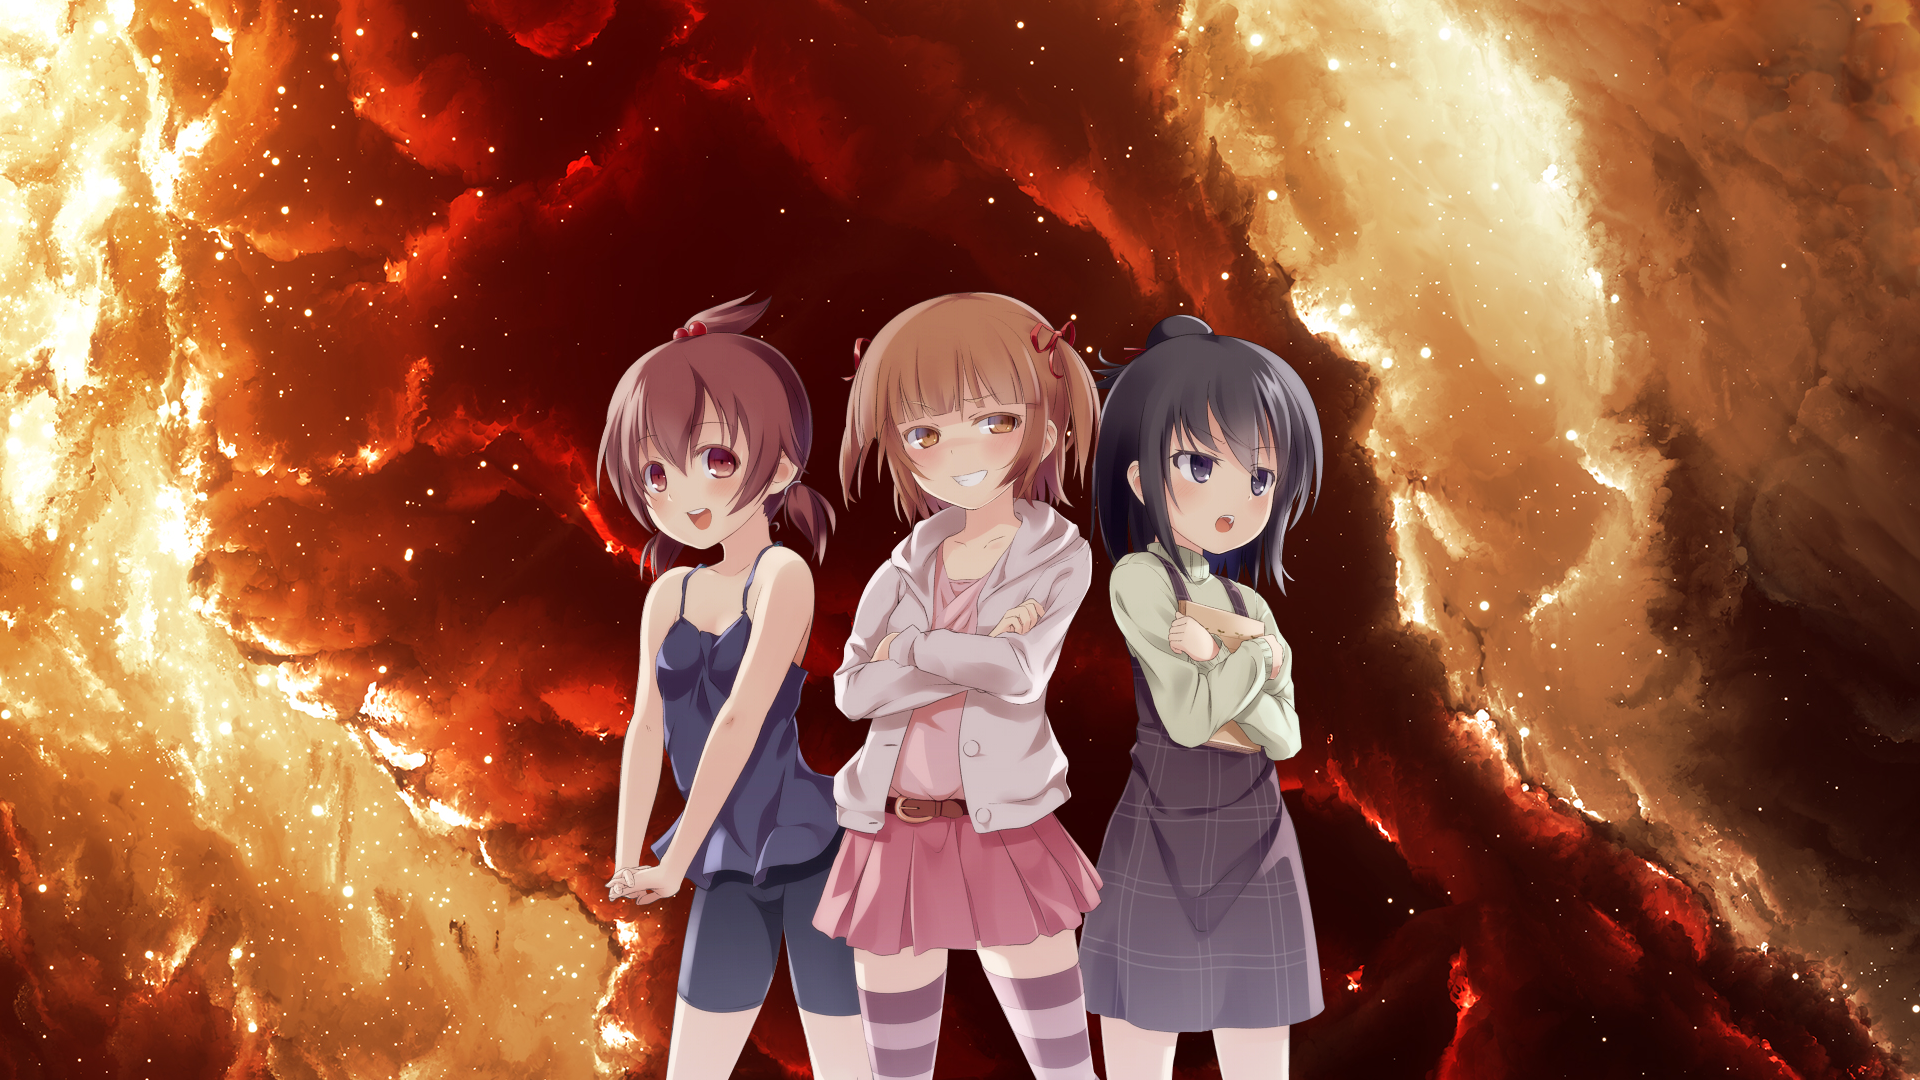 Anime 1920x1080 Mitsudomoe anime girls anime standing smiling miniskirt women trio arms crossed brunette dark hair